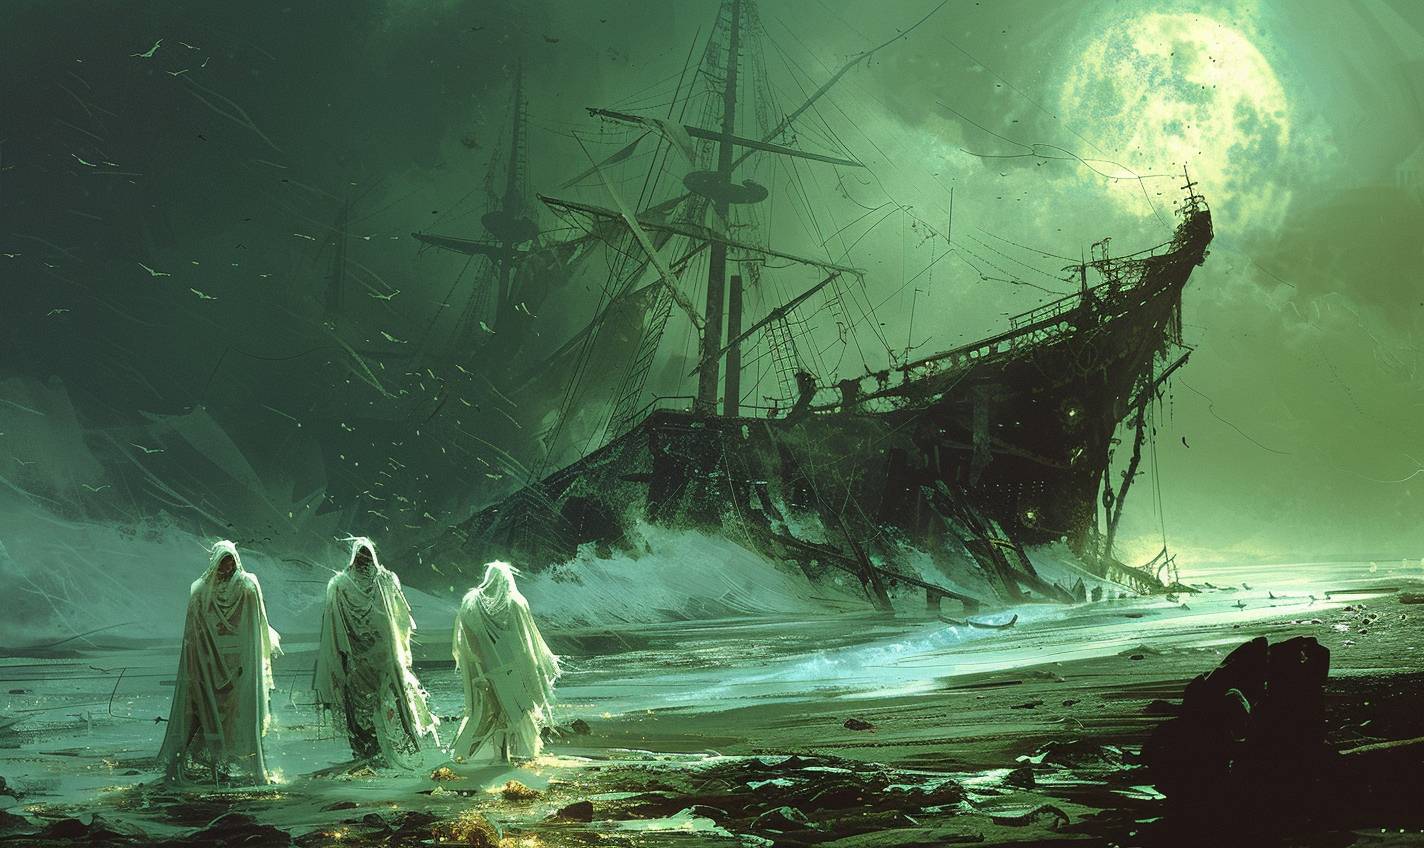 アルフォンソ・ムカのスタイルで、幽霊船が幽霊のような岸辺で難破した